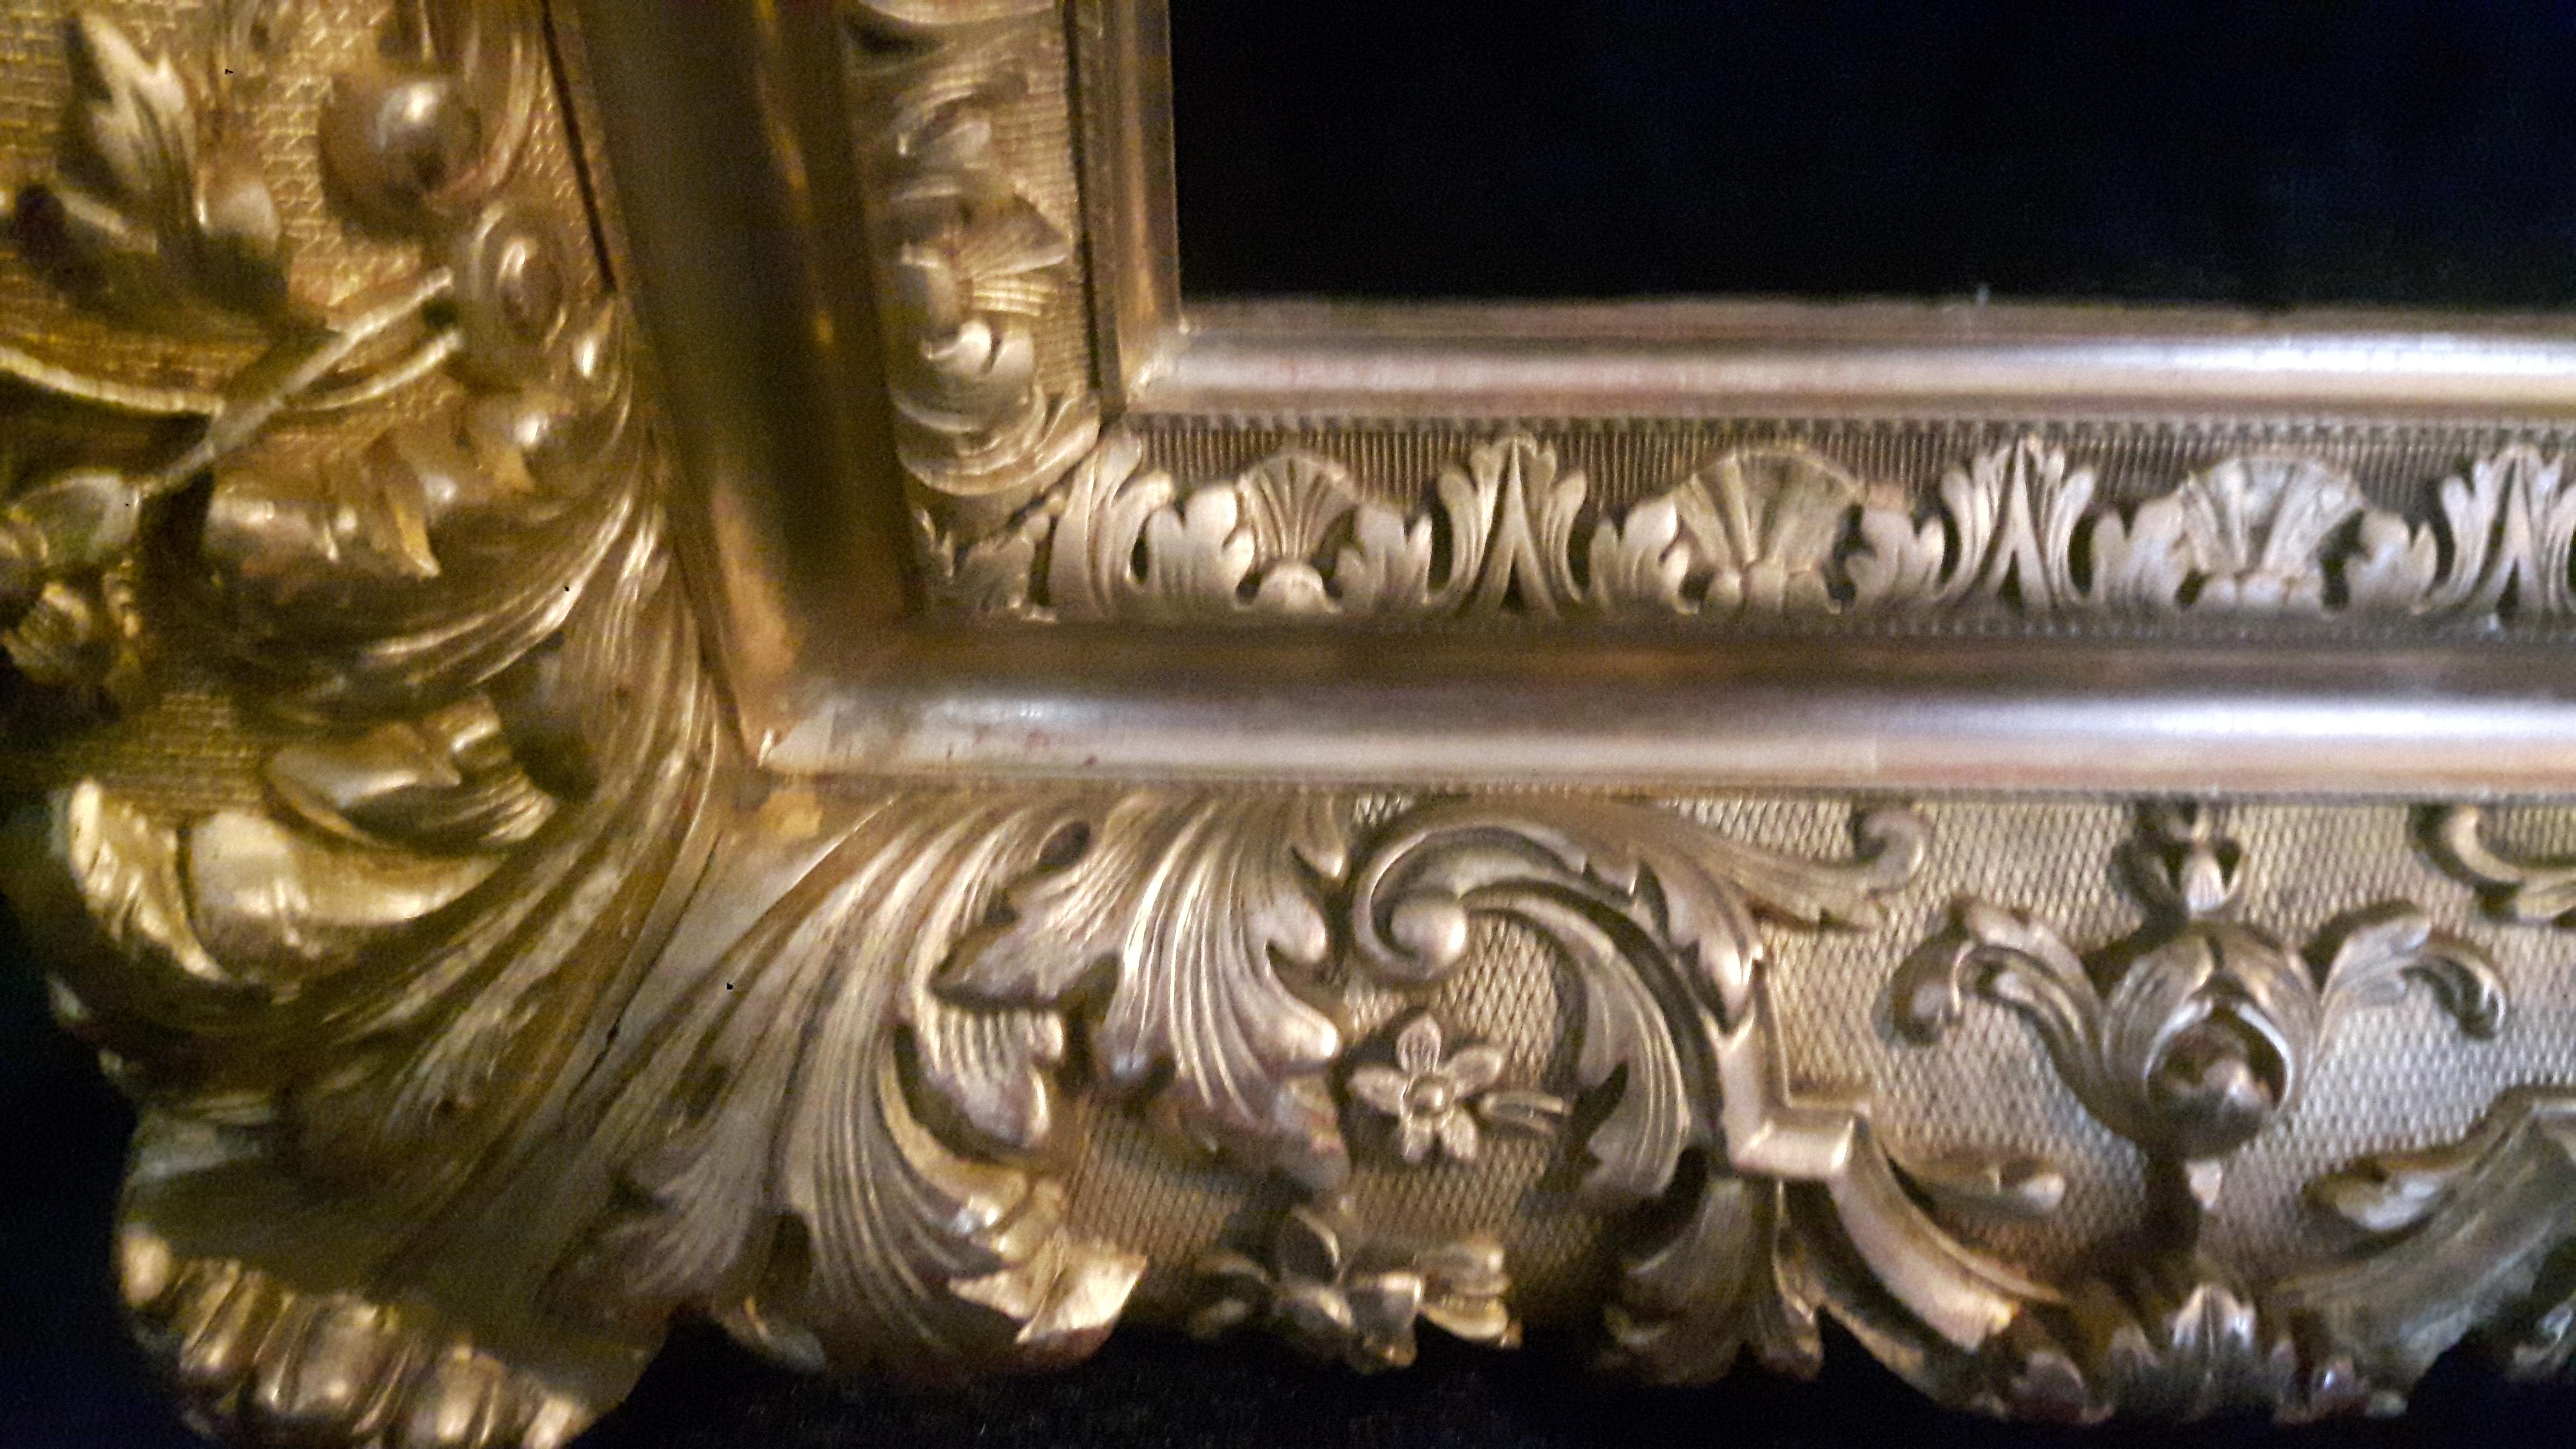 Cadre de couverture en métal doré très détaillé de la fin du XIXe siècle, décoré de motifs floraux dorés.